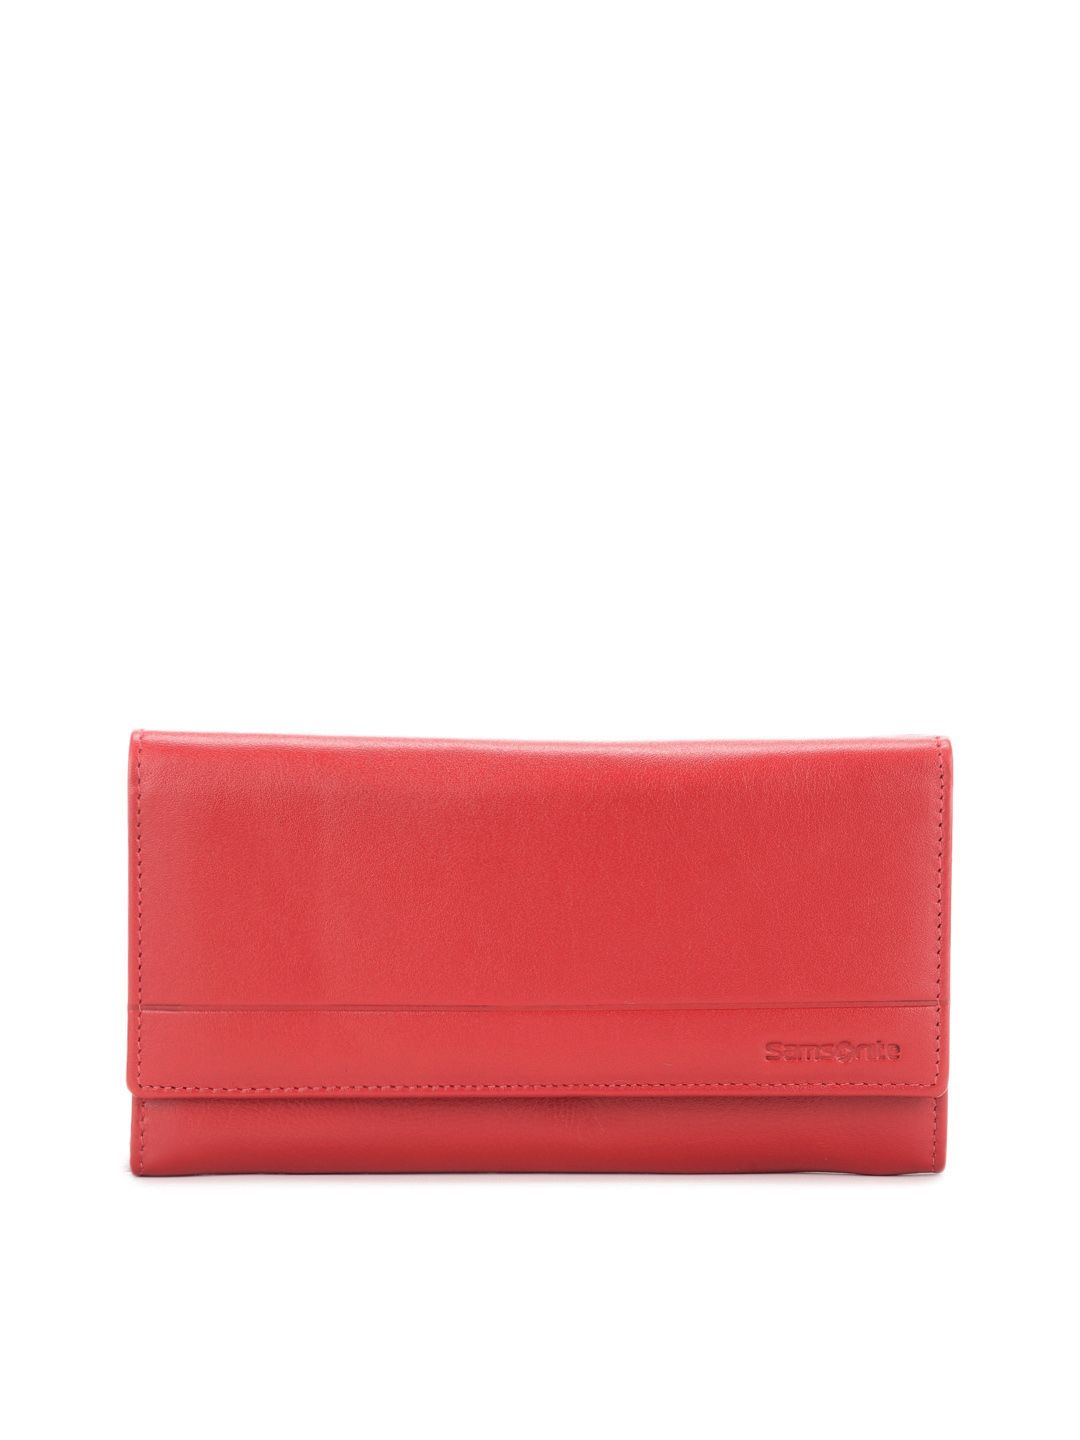 Buy Samsonite Women Red Wallet - 365 - Accessories for Women - 64628